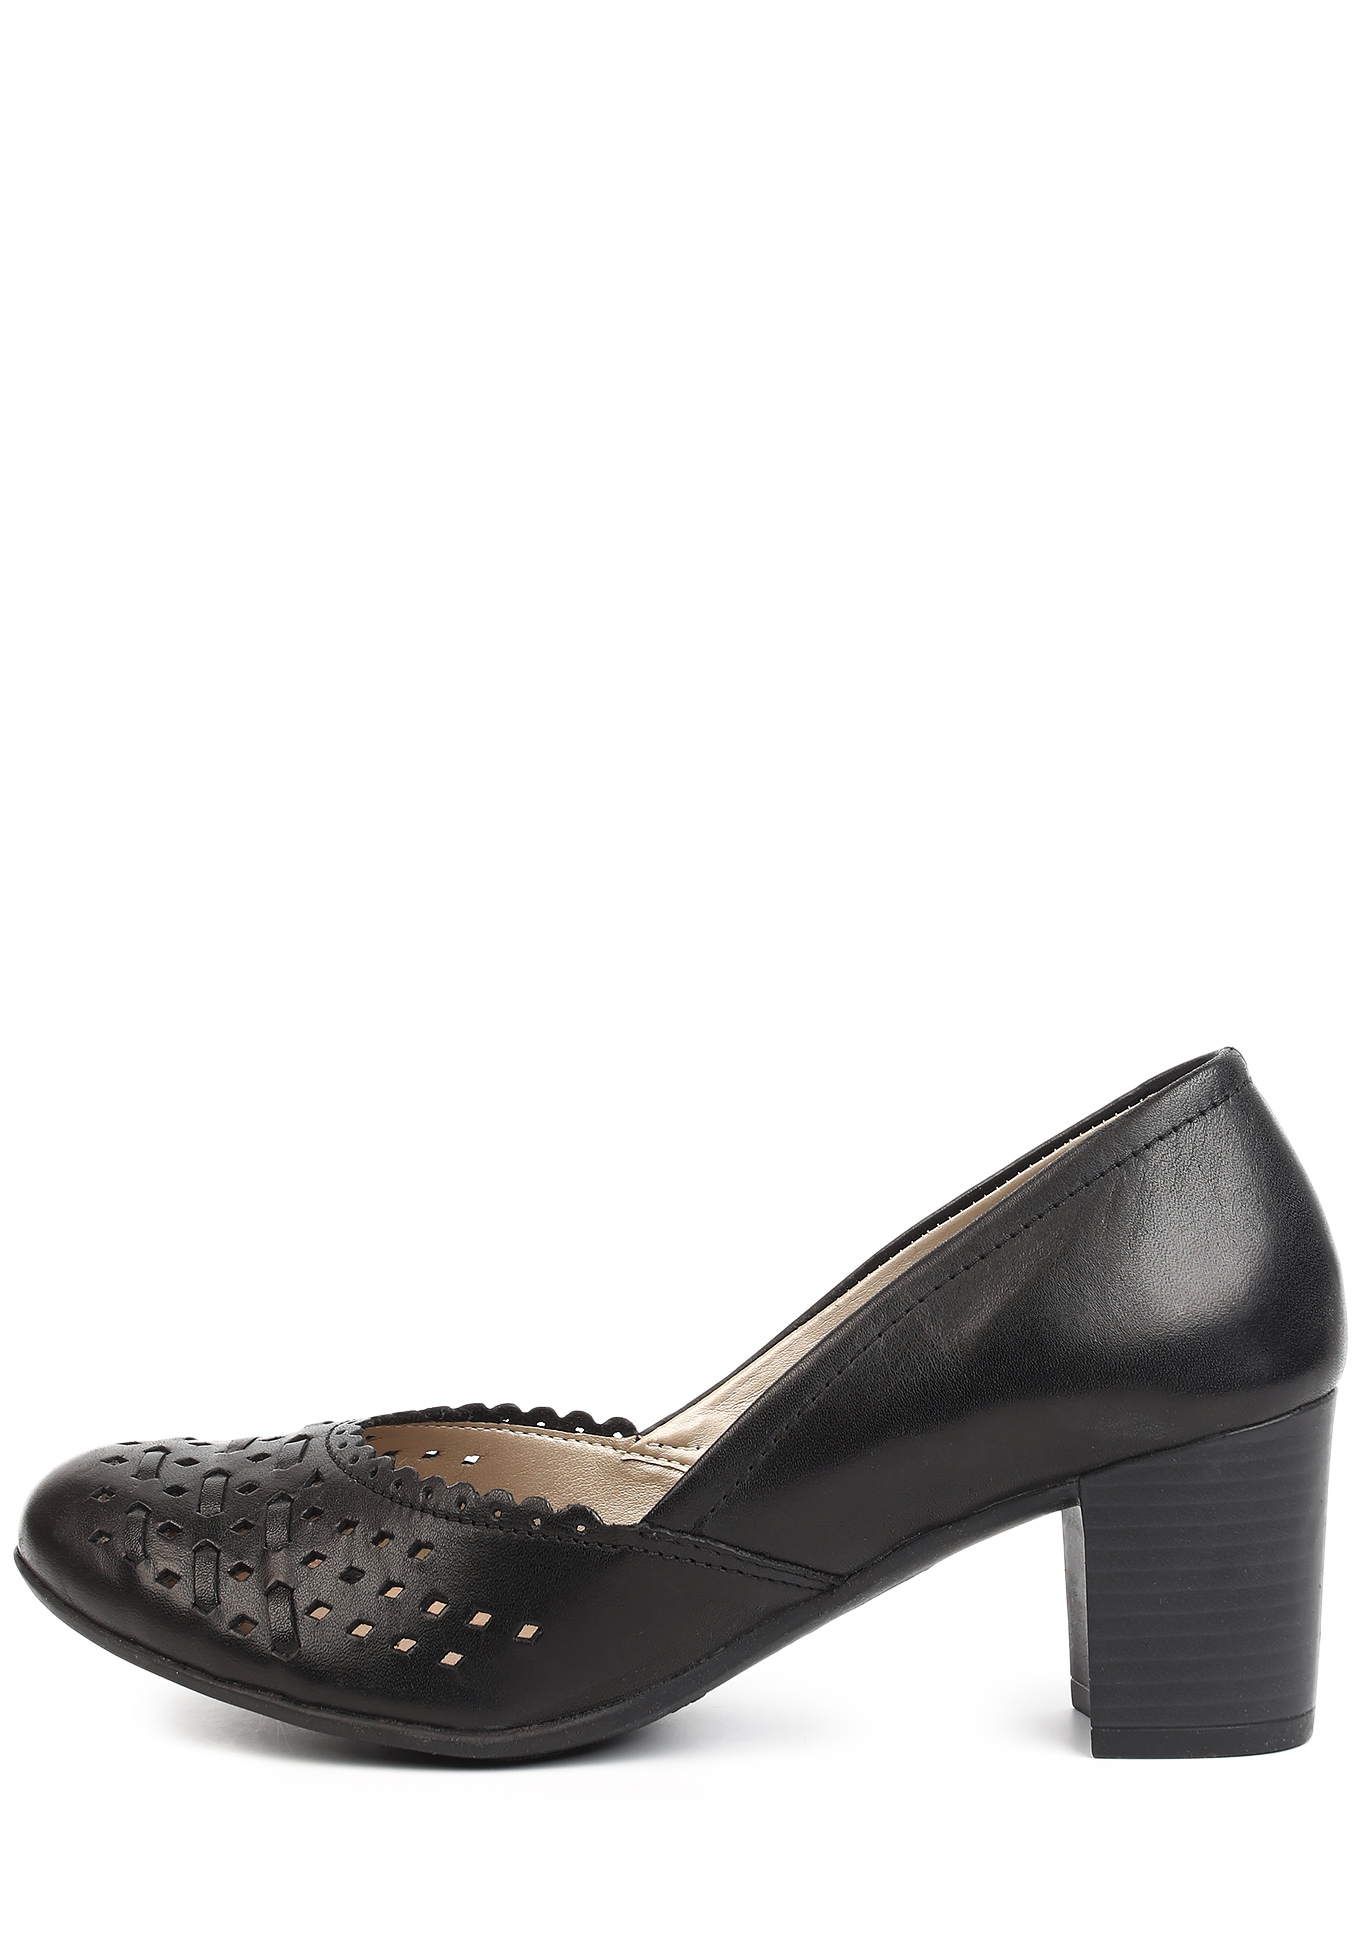 Туфли летние женские "Кристи" Remonte, размер 42, цвет черный - фото 4